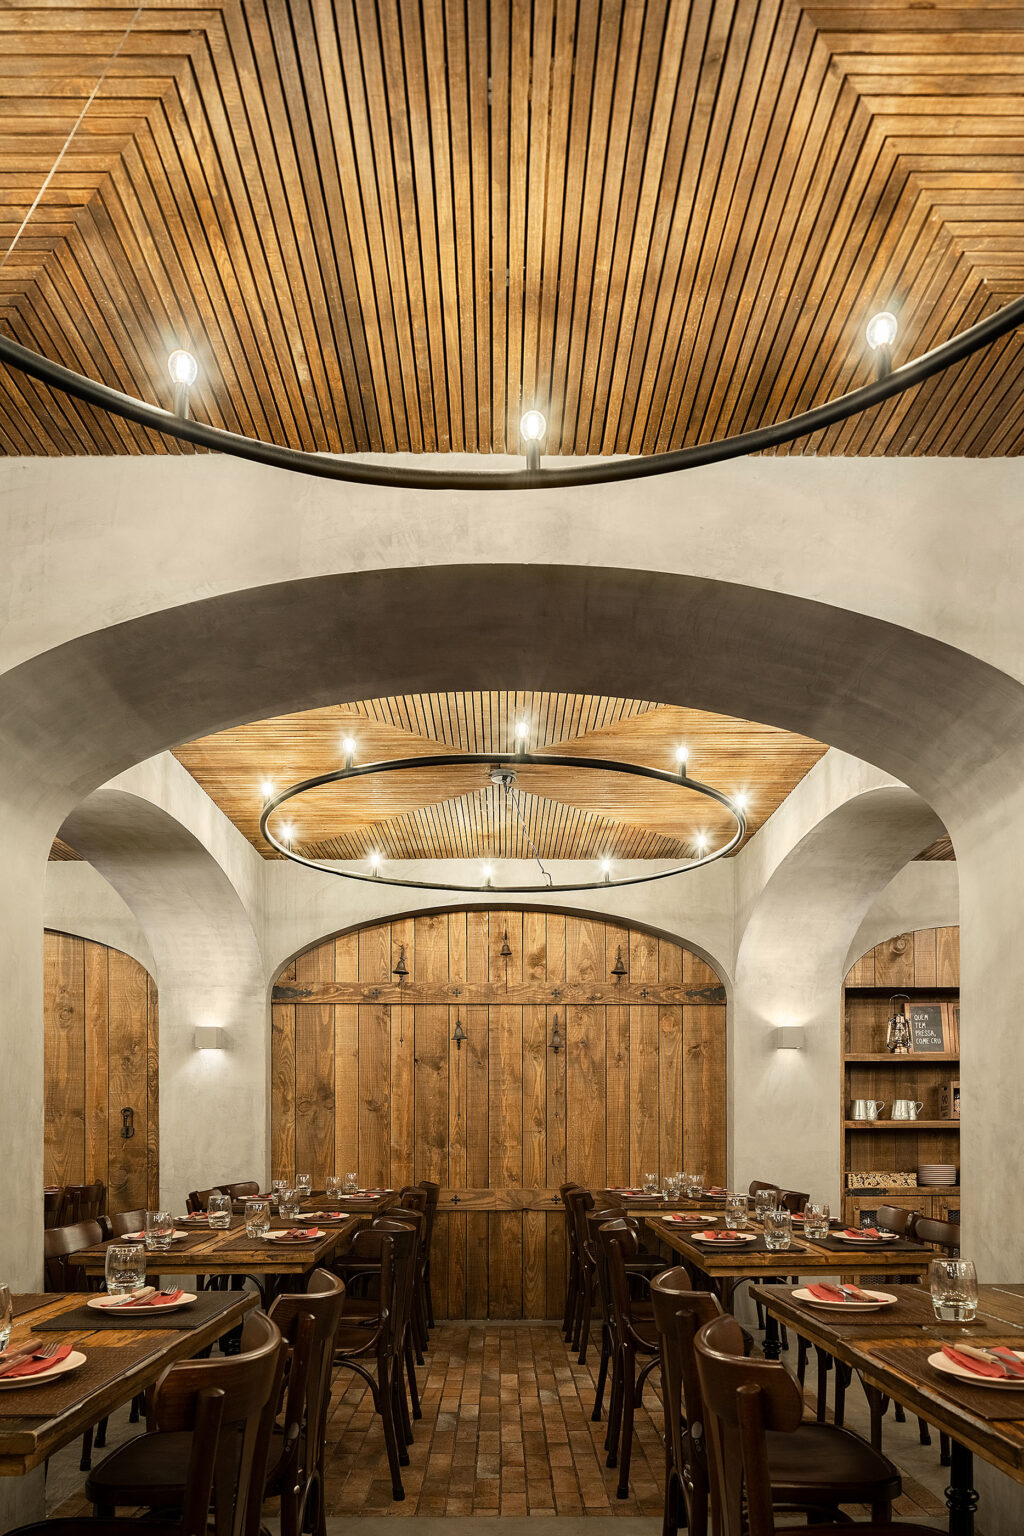 Ein einzigartiges Erlebnis in Kelleratmosphäre. BARRIL-Restaurant. PAULO MERLINI Architekten